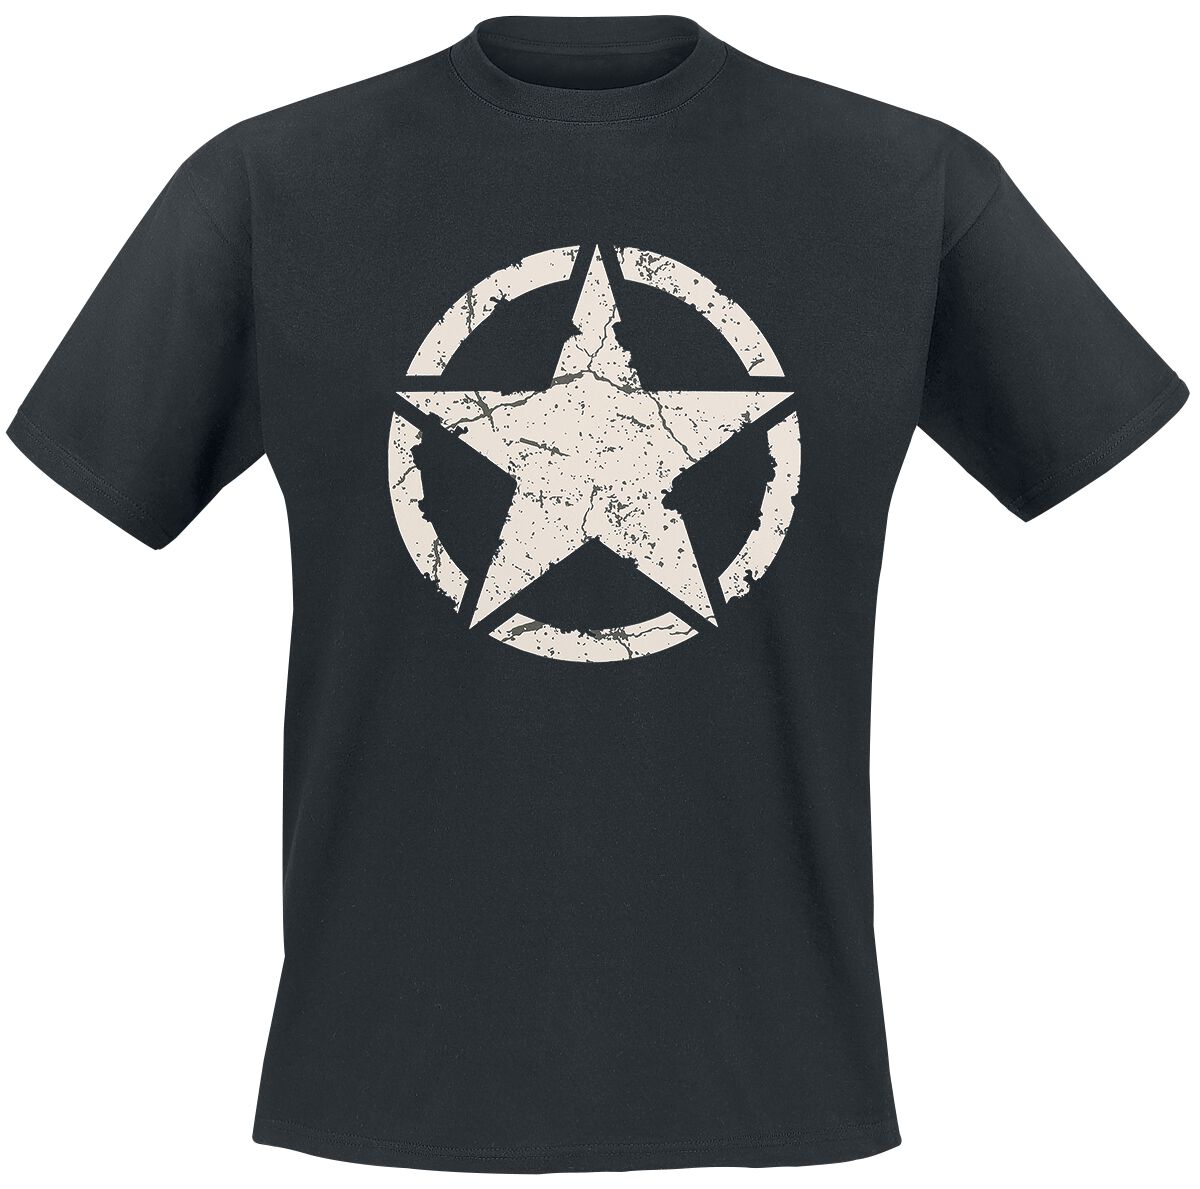 Gasoline Bandit - Rockabilly T-Shirt - Army Star - S bis 4XL - für Männer - Größe L - schwarz